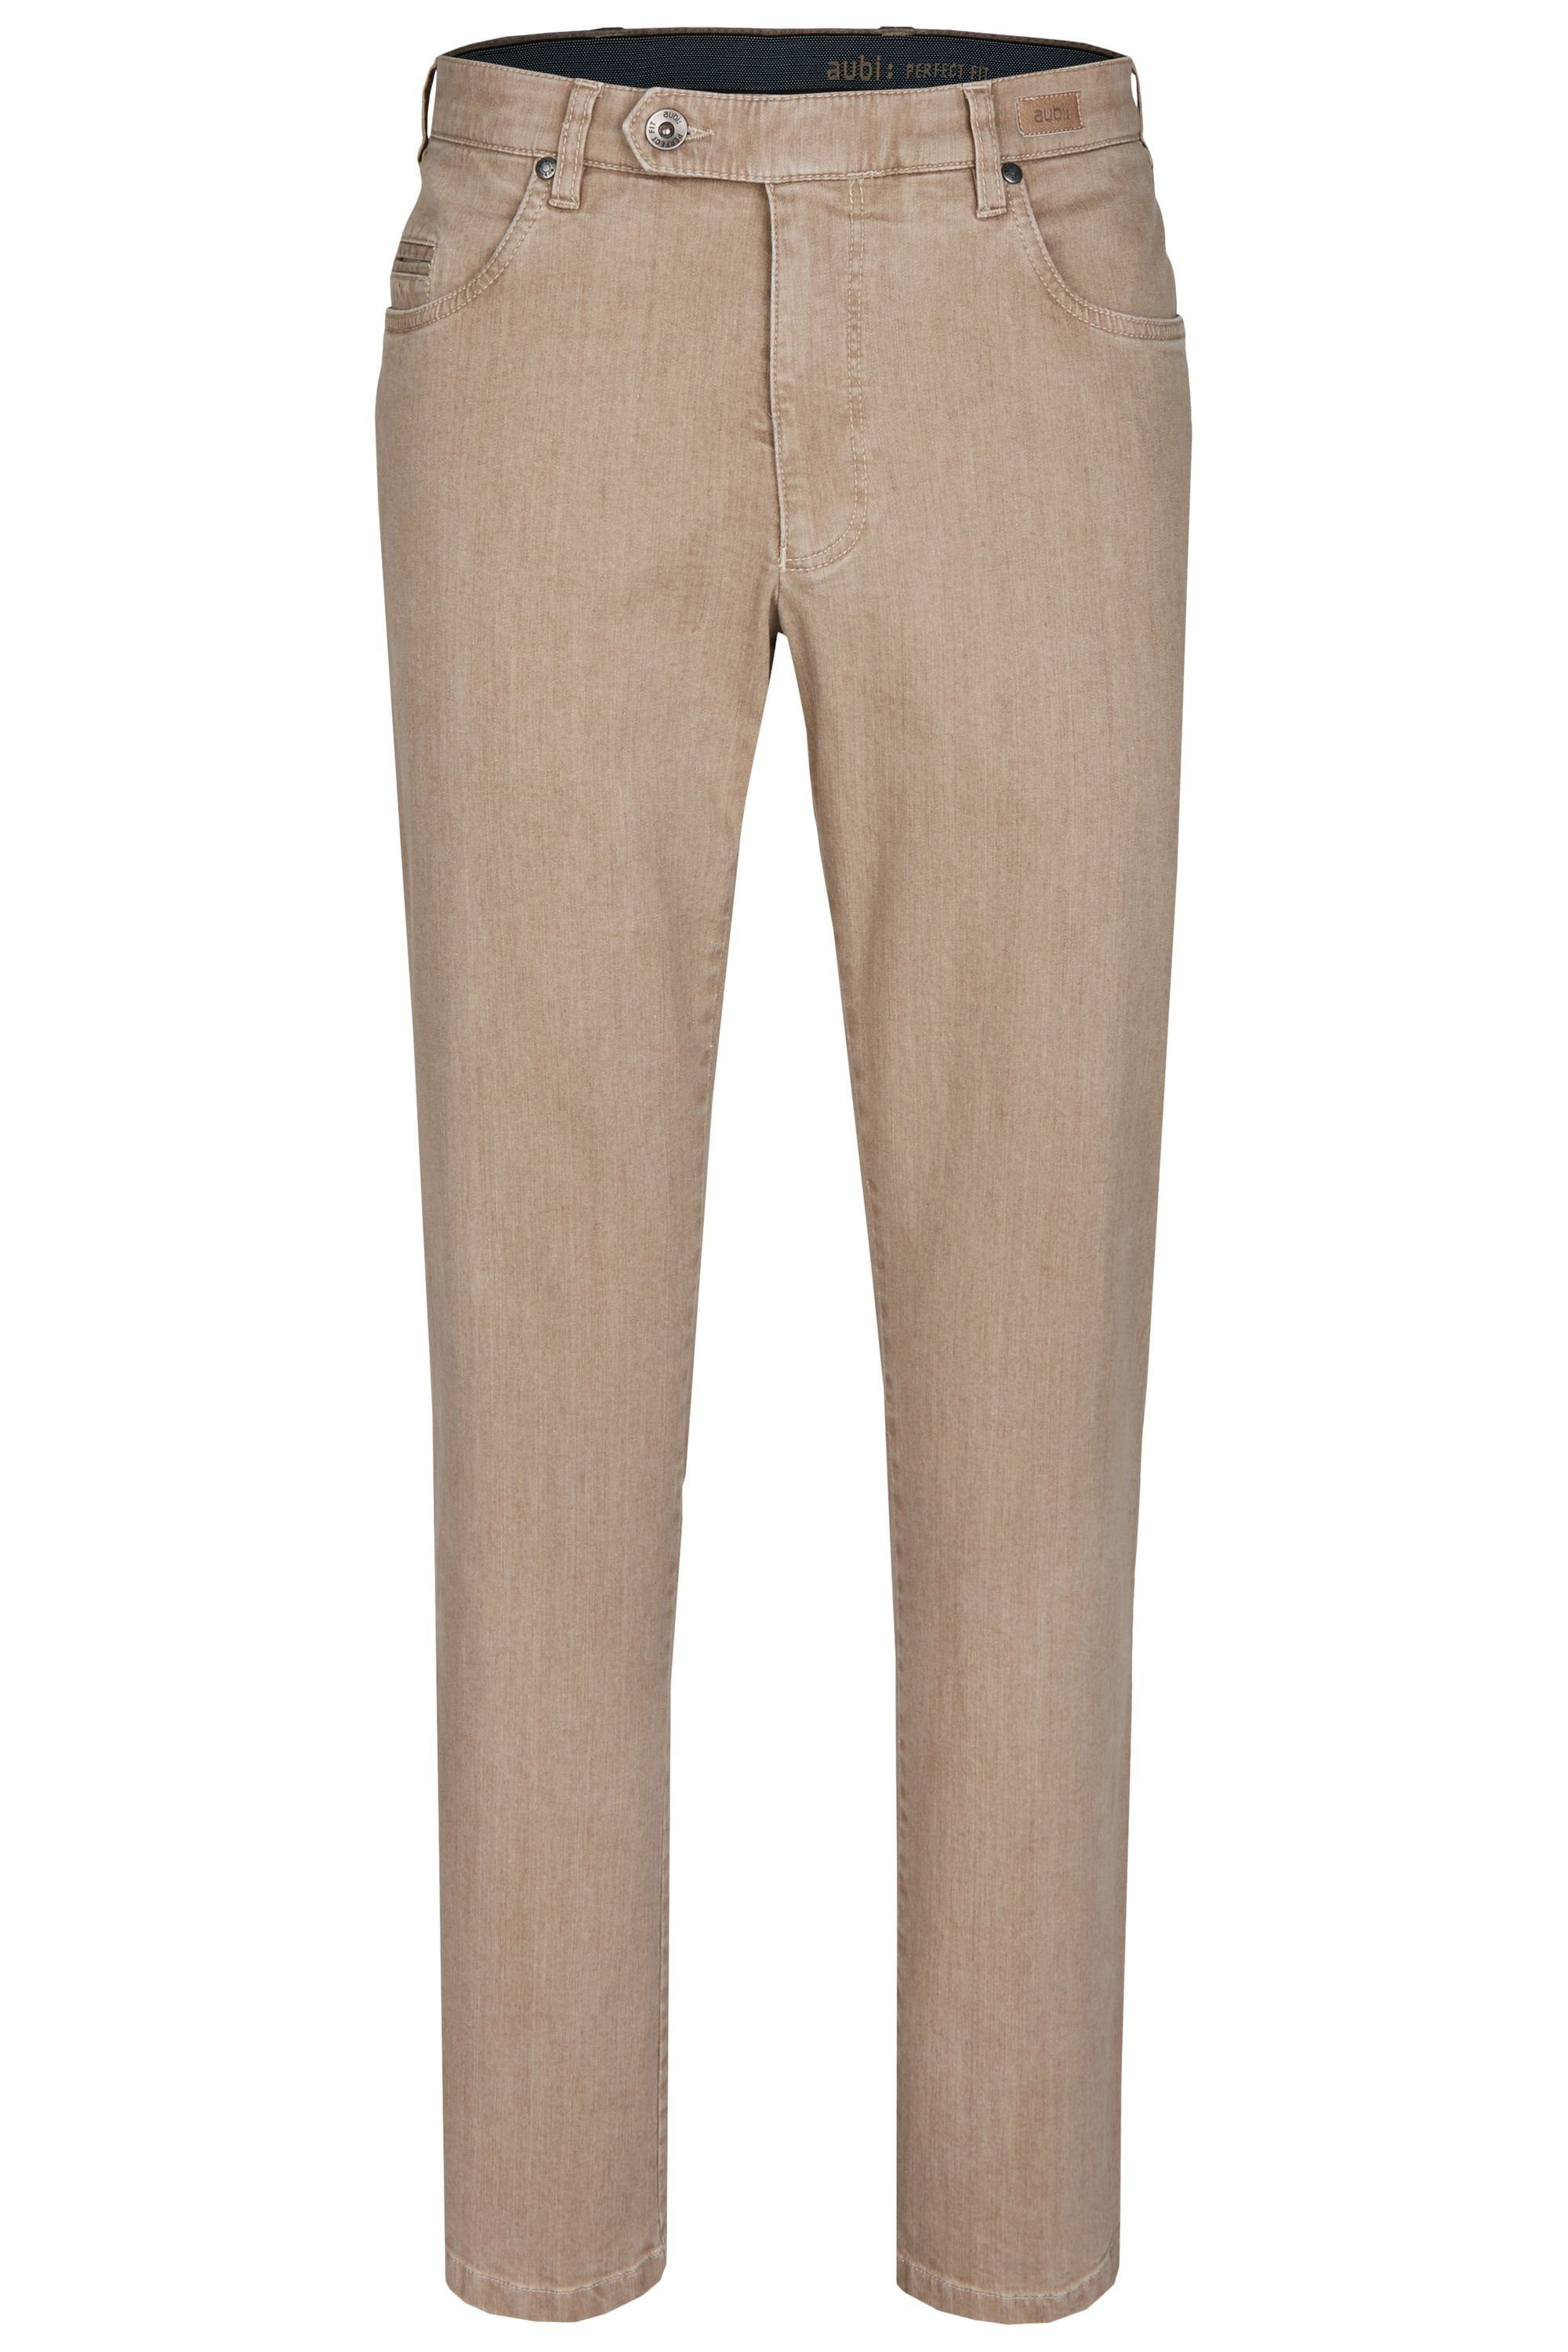 Jeans Herren Stretch Fit High (22) Hose Ganzjahres Perfect beige Bequeme aus Modell Jeans aubi 577 aubi: Flex Baumwolle